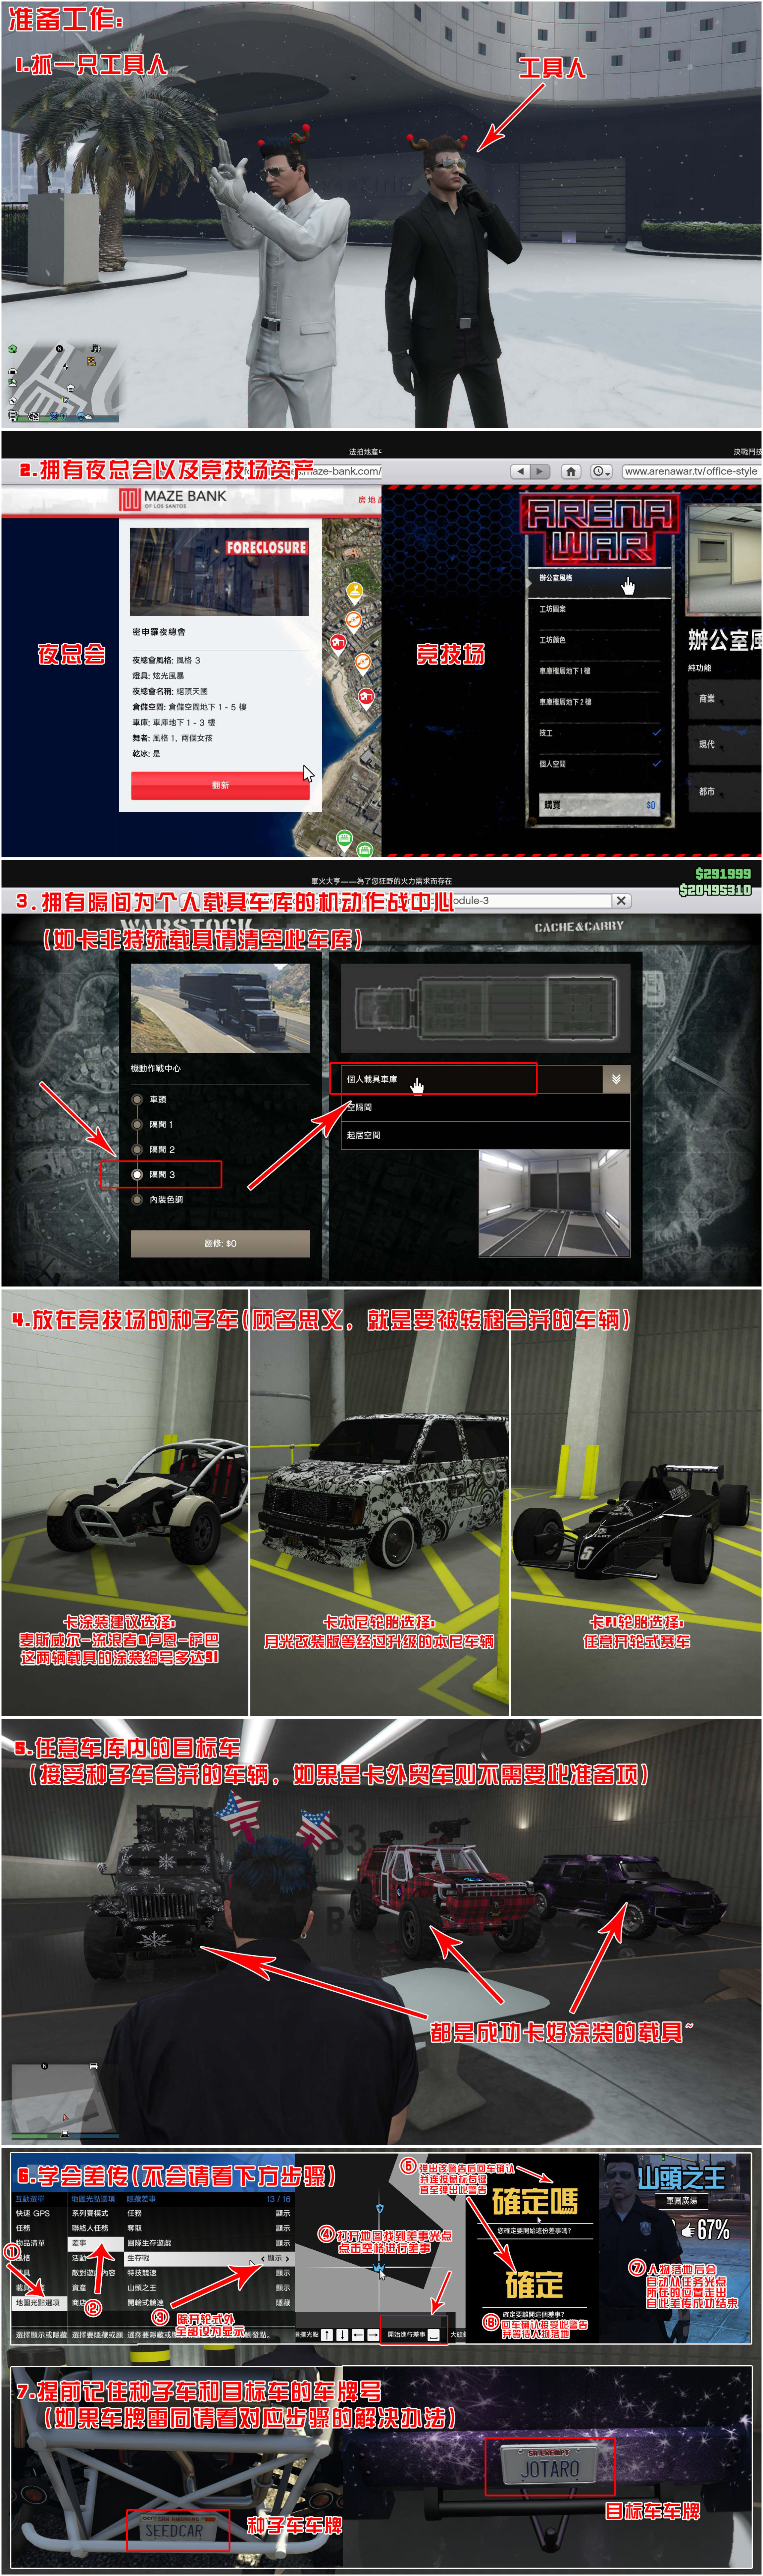 【侠盗猎车手5】GTA 在线模式攻略：获取载具隐藏涂装&复制车&变造外贸载具-第0张